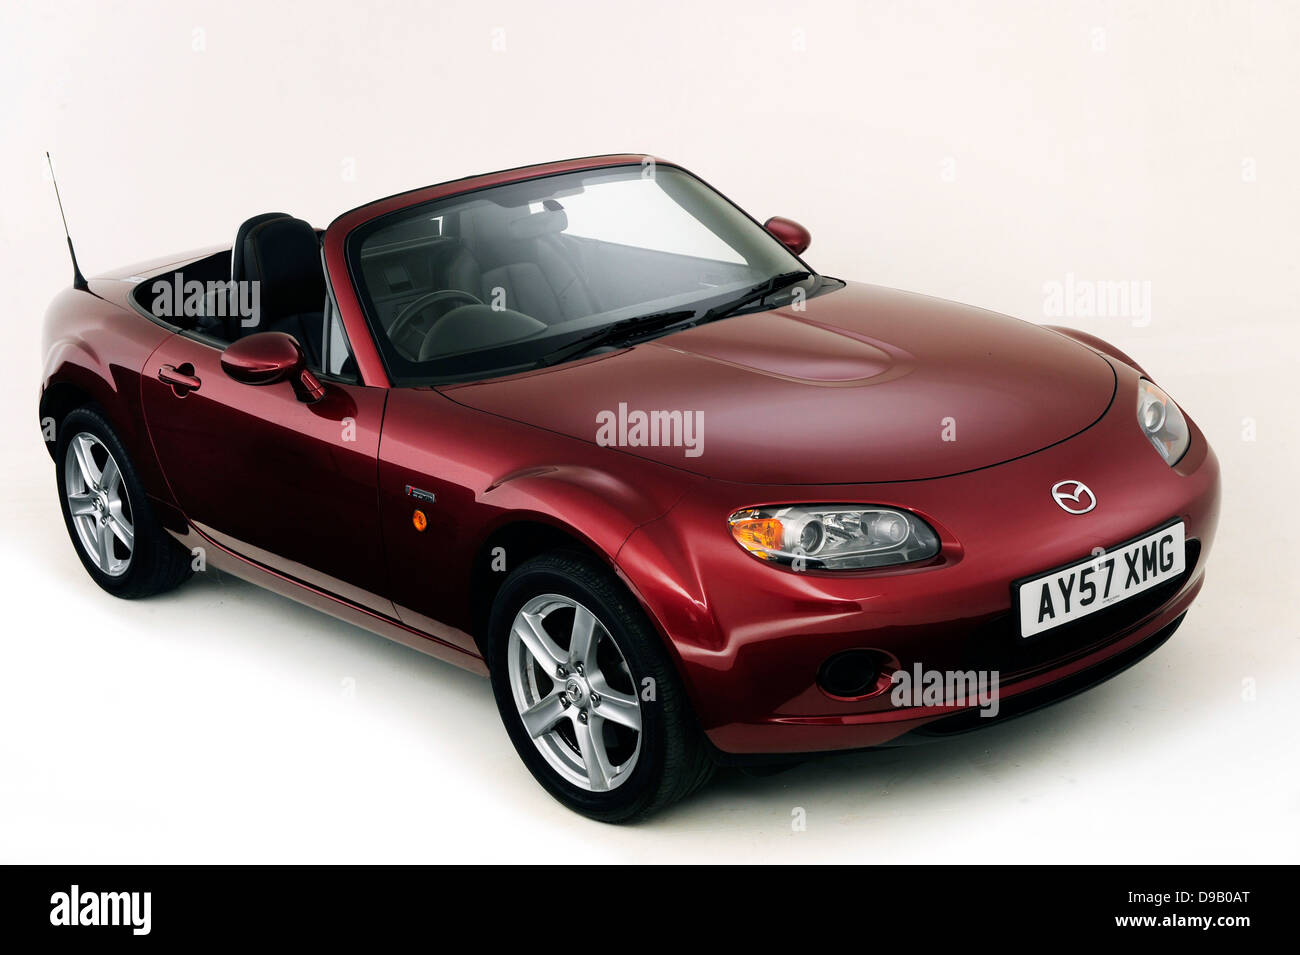 2007 Mazda MX5 Stock Photo